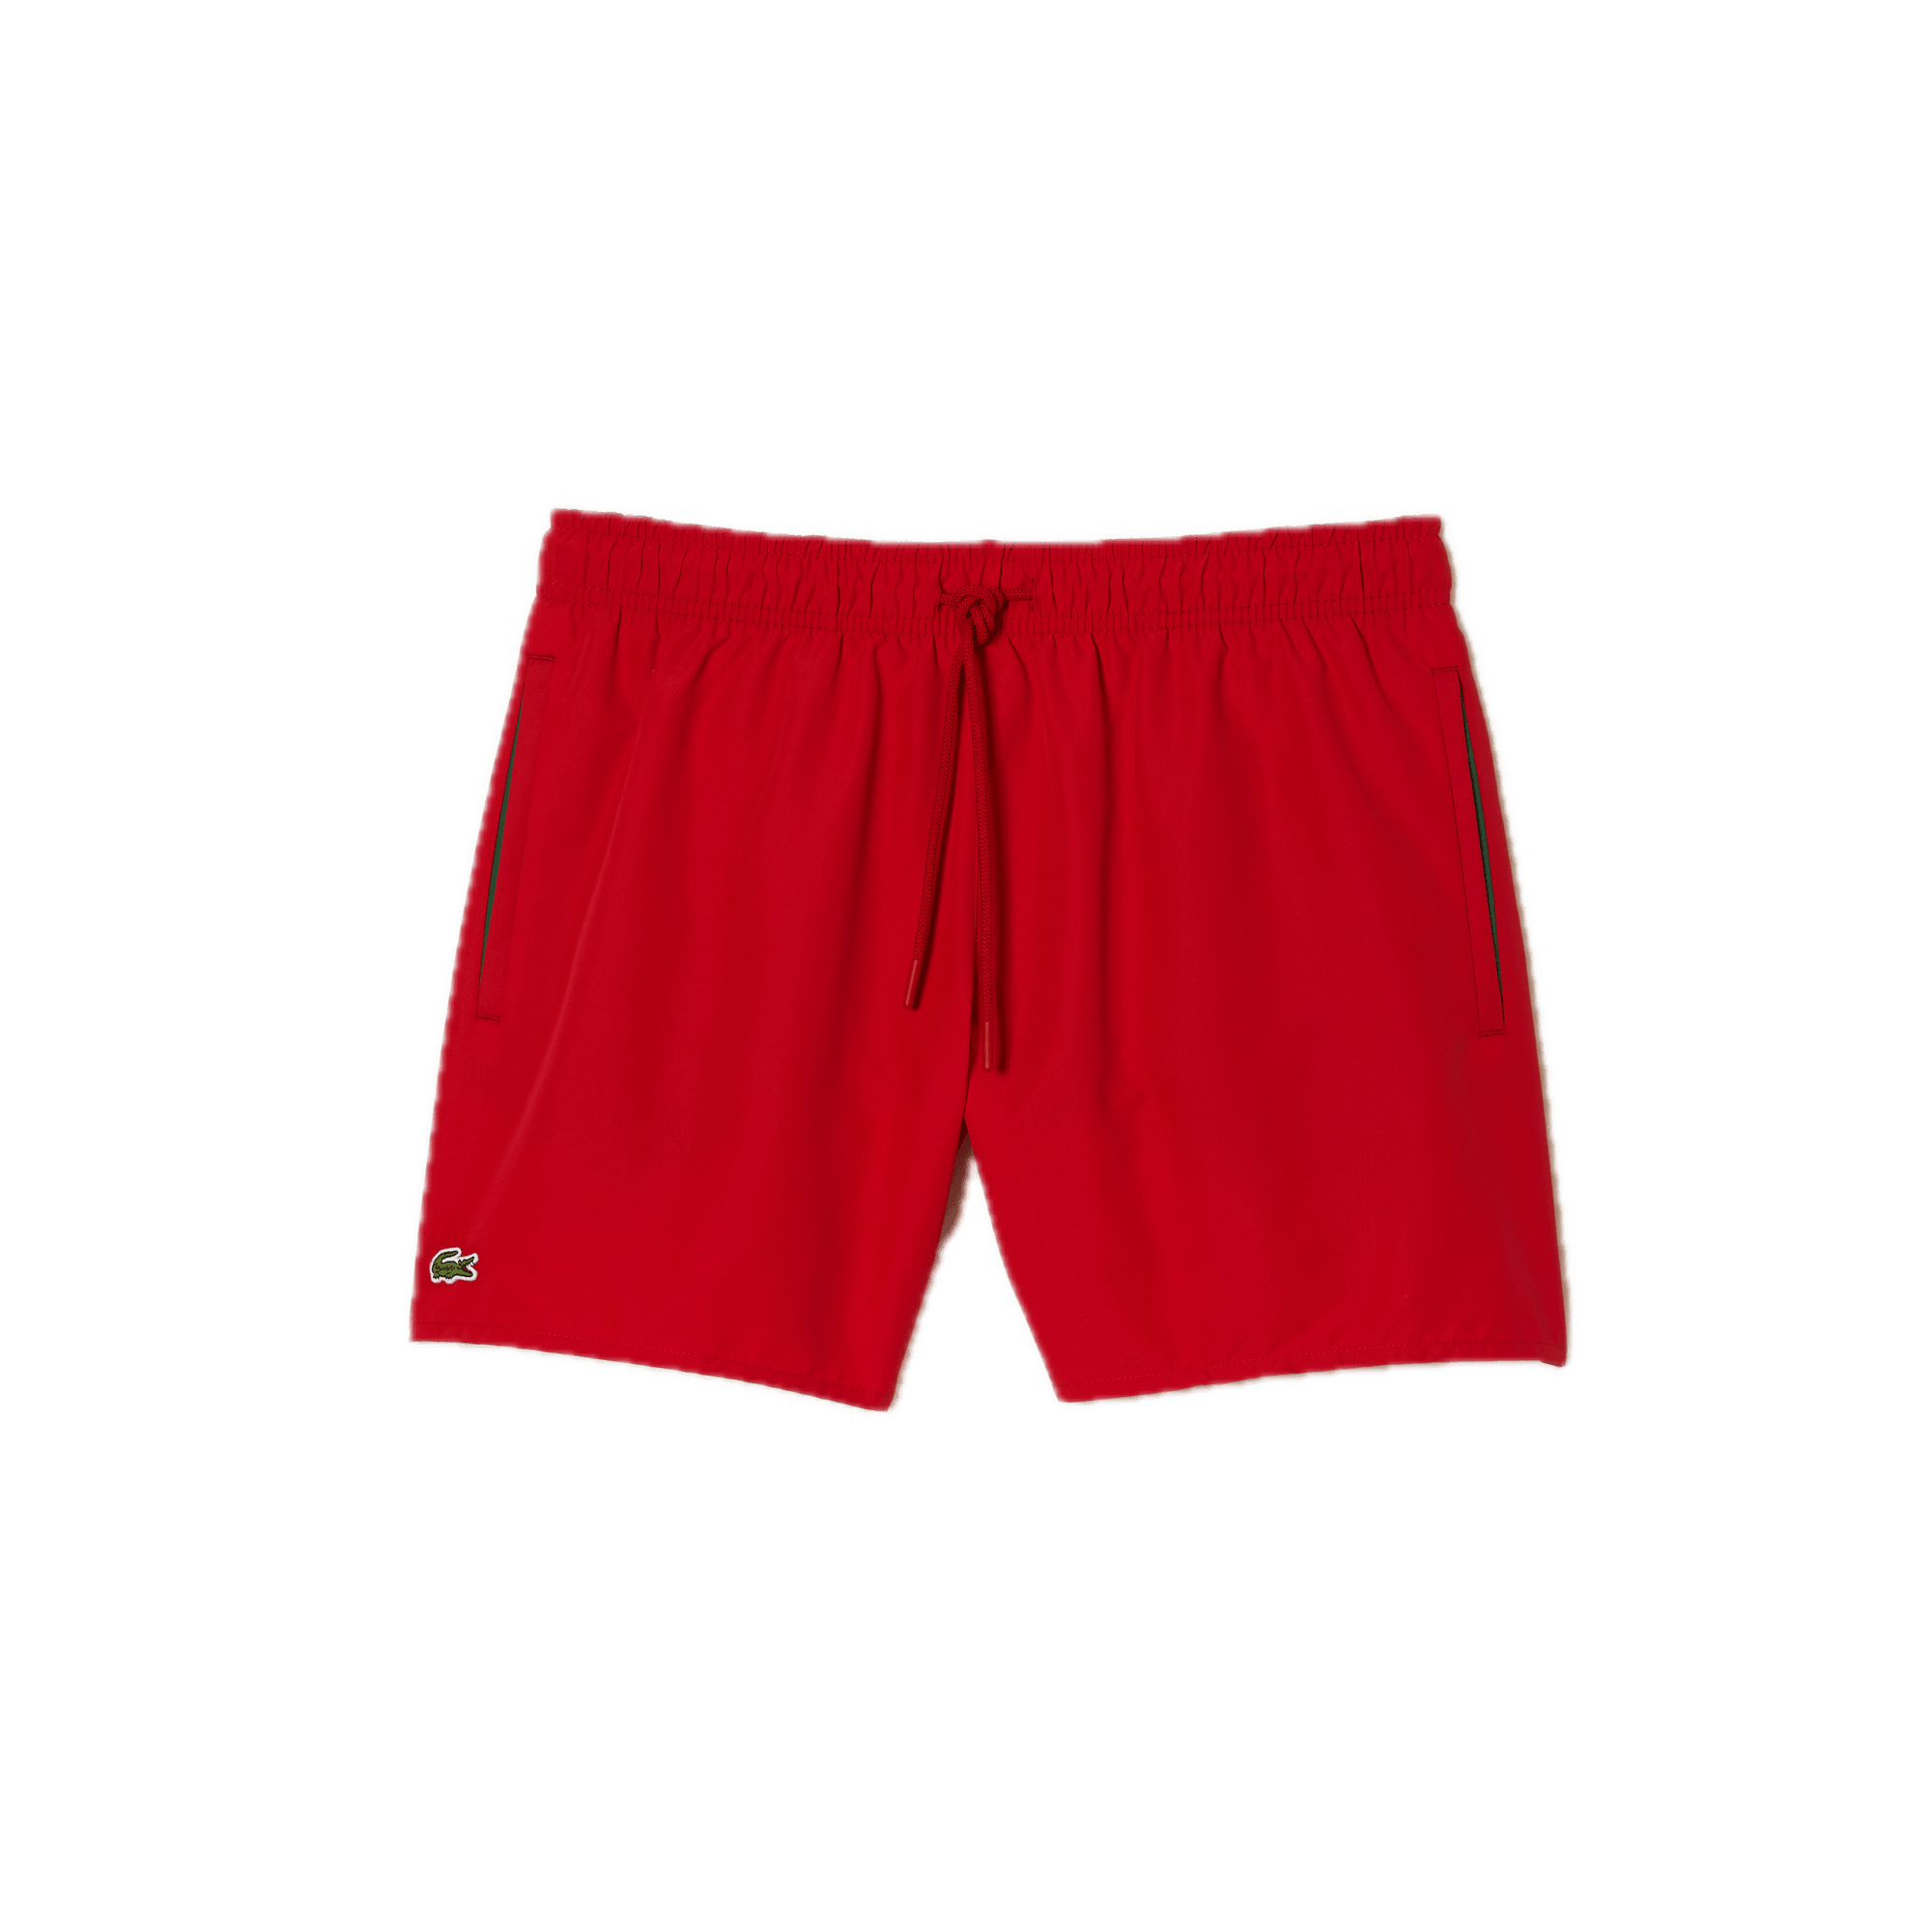 Bañador corto de hombre Lacoste secado rápido Rojo - ECRU